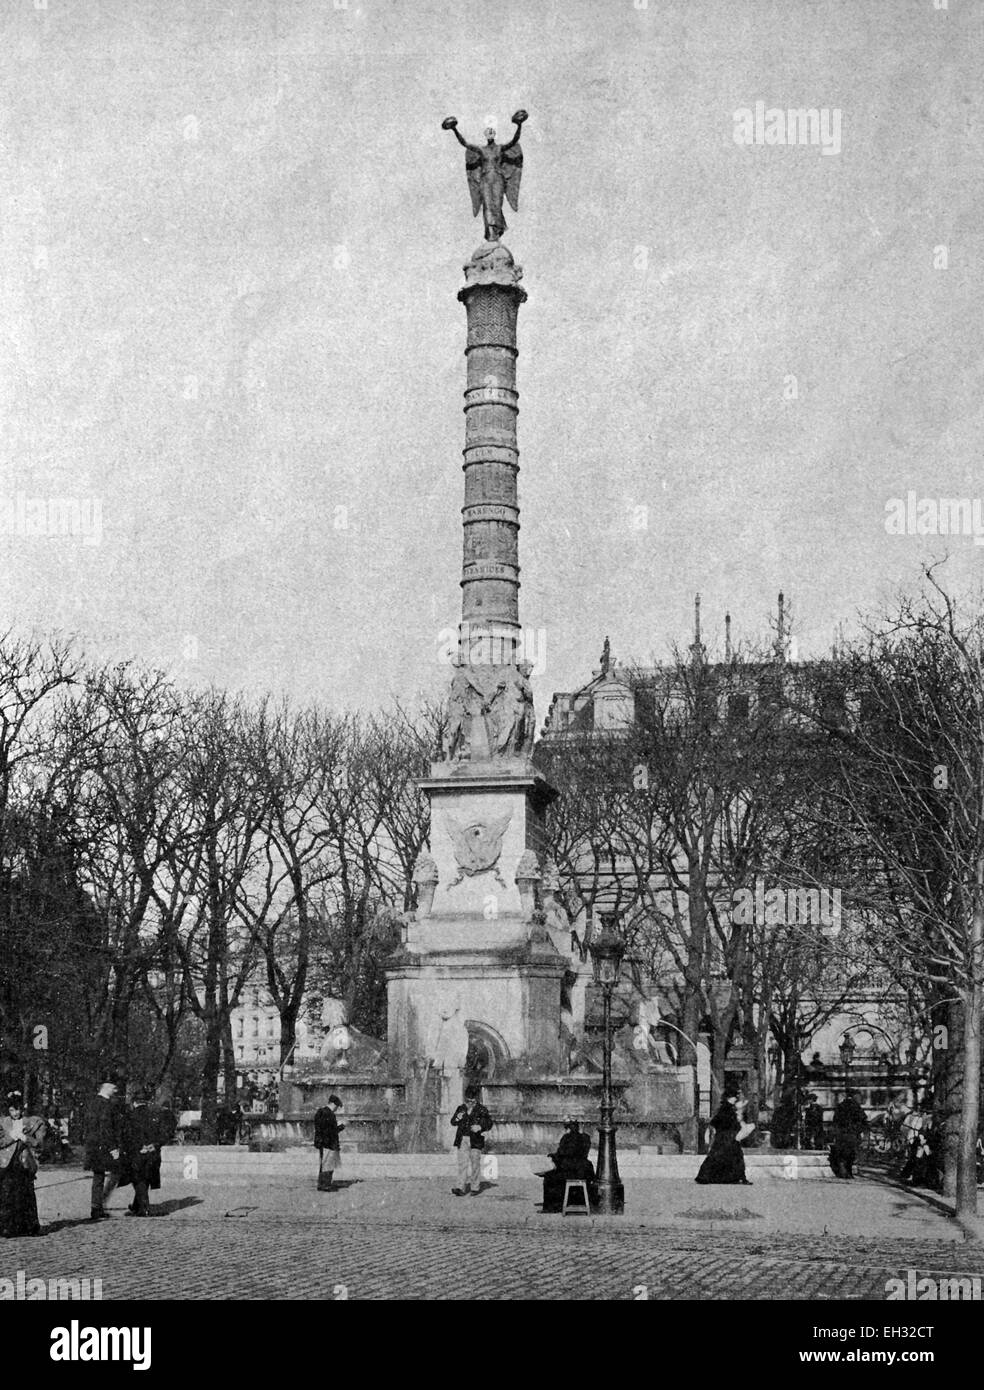 Chatelet column statue Banque d'images noir et blanc - Alamy